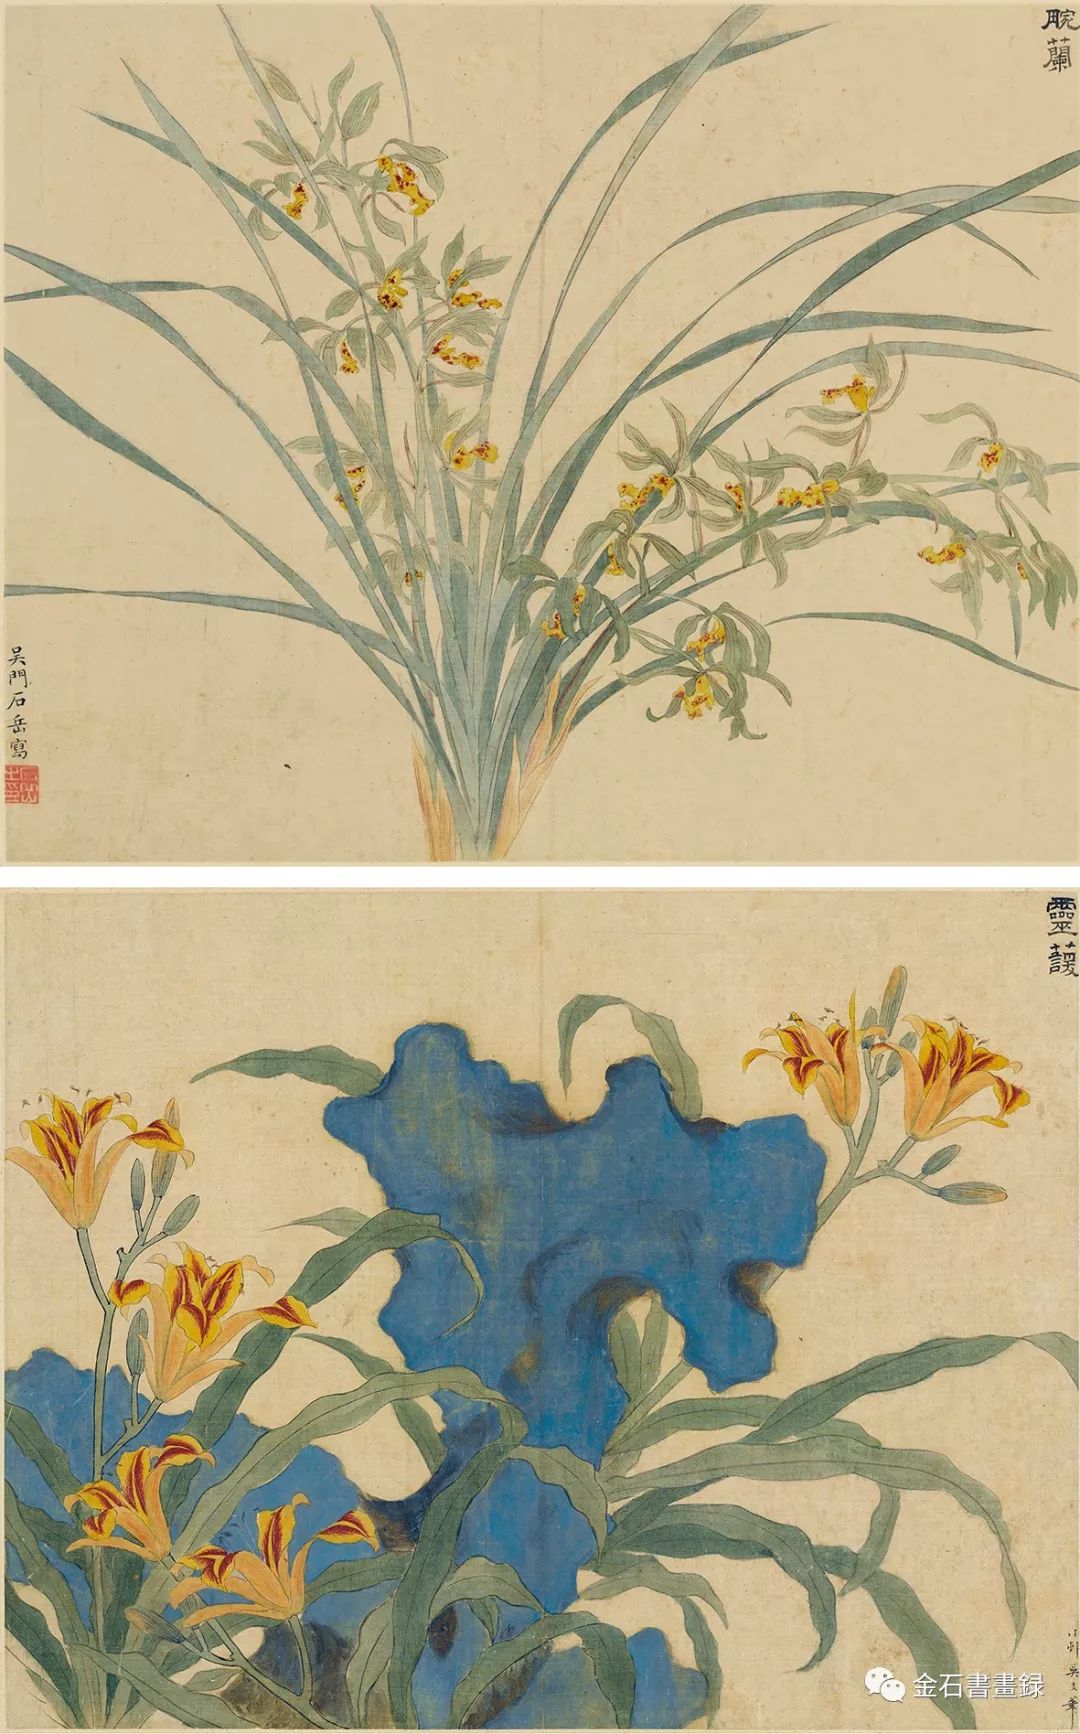 32厘米×40厘米,1545年明后期至清初,文人画坛回溯古典的时风在花鸟